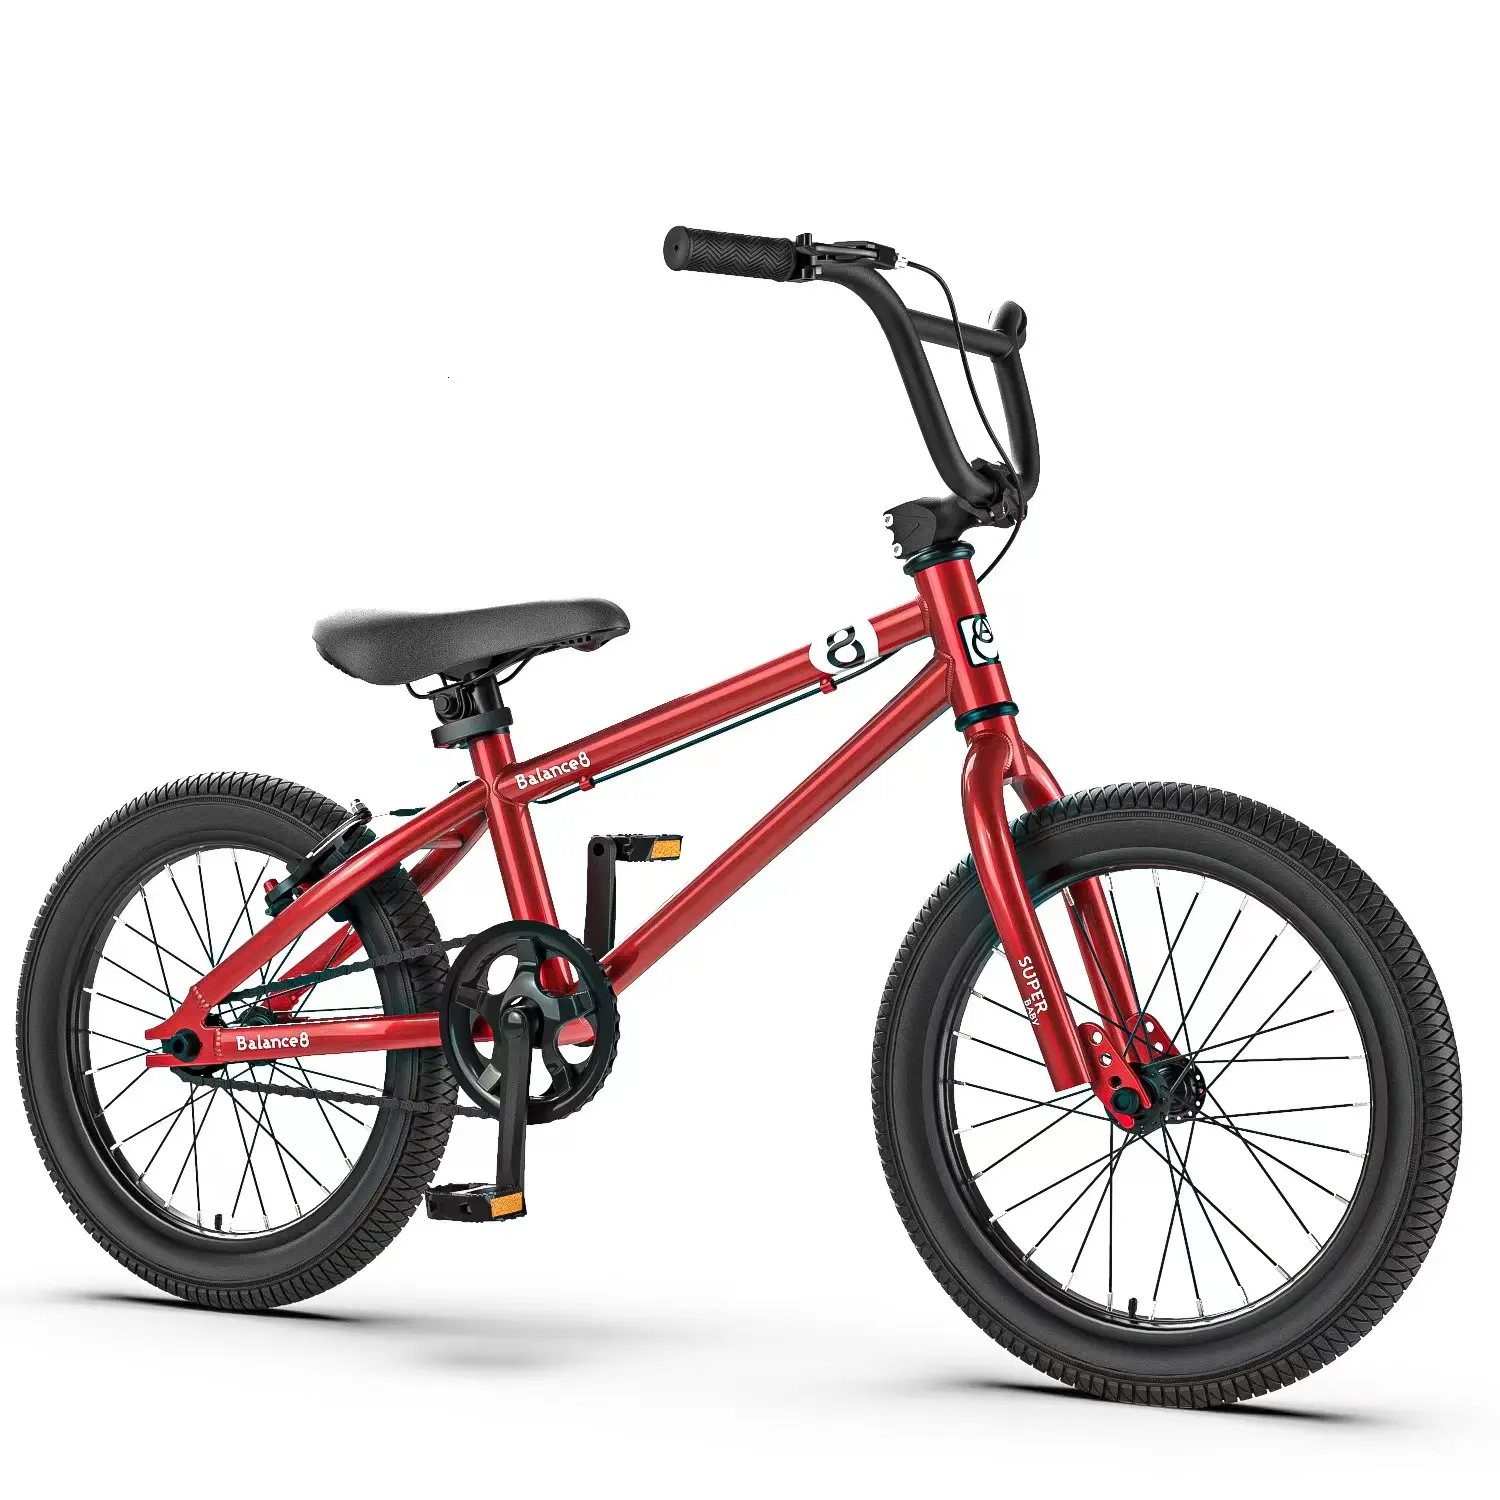 2022 Kinder 20 Zoll Fahrrad Bestseller BMX 16 20 Zoll Fahrrad Single Speed Silber rot neue Mode Farbe für Kinder Fahrrad Fahrrad